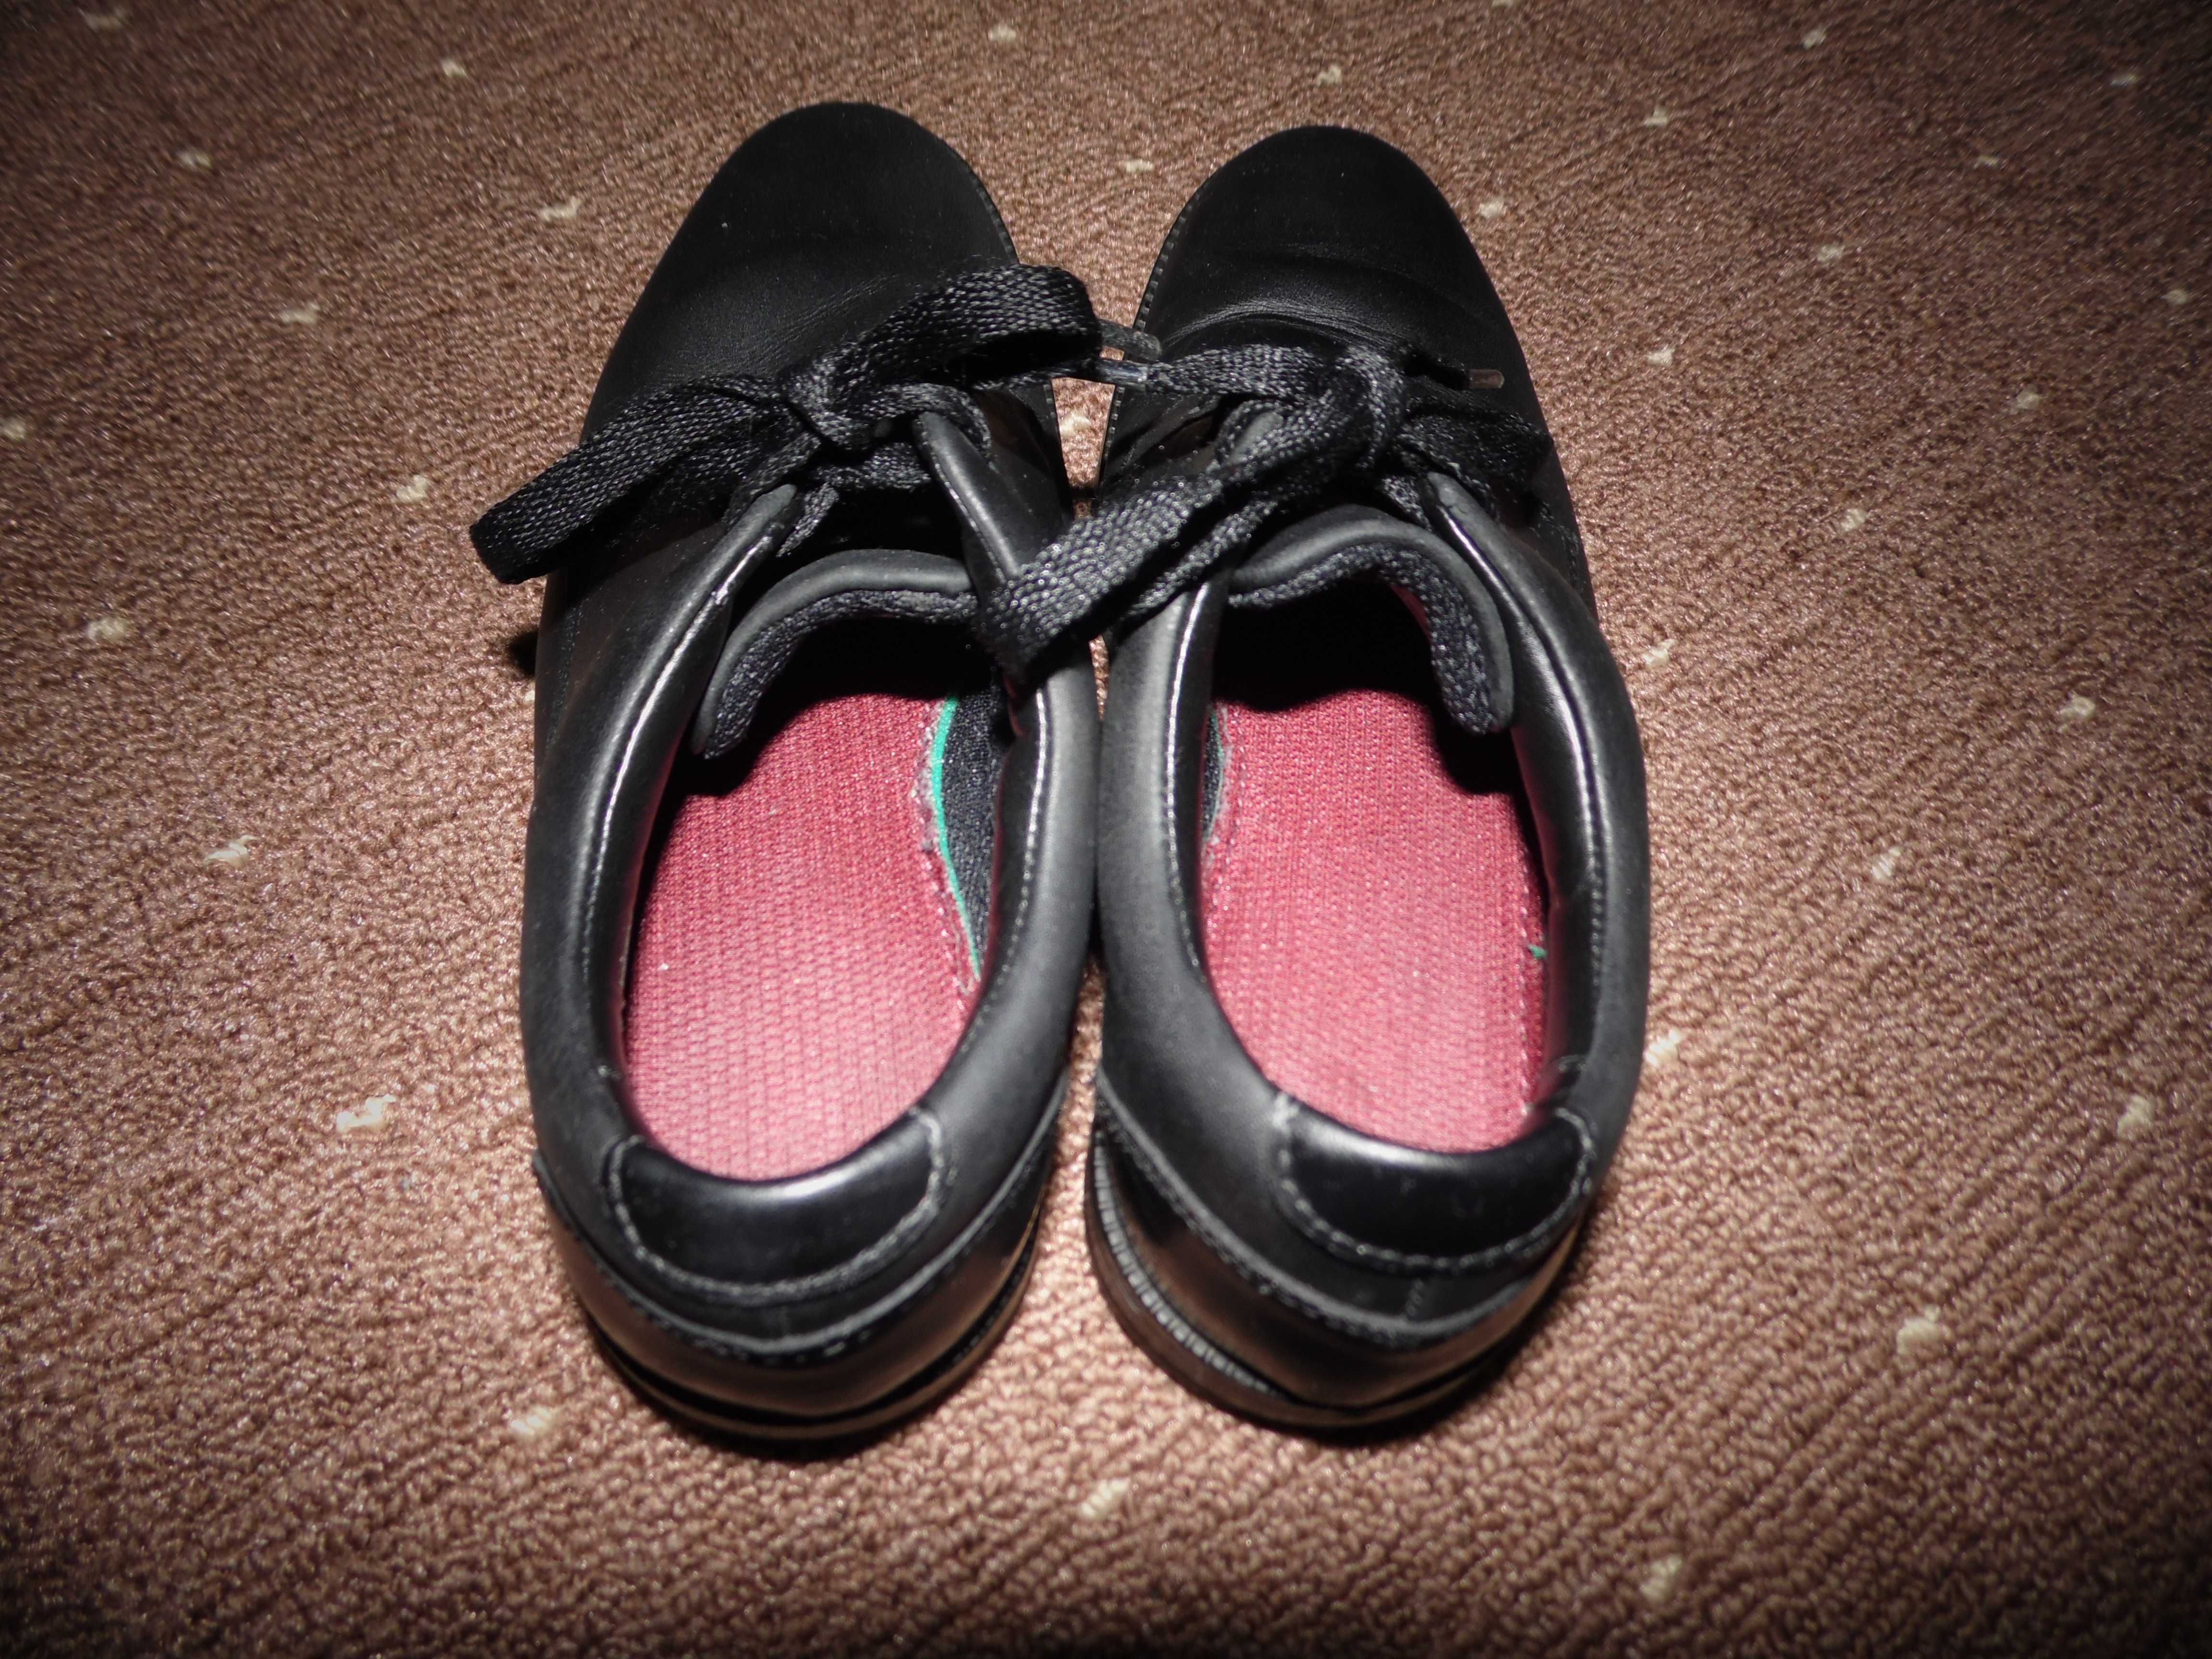 Кожаные туфли Clarks размер 32 стелька 20-20.5 см